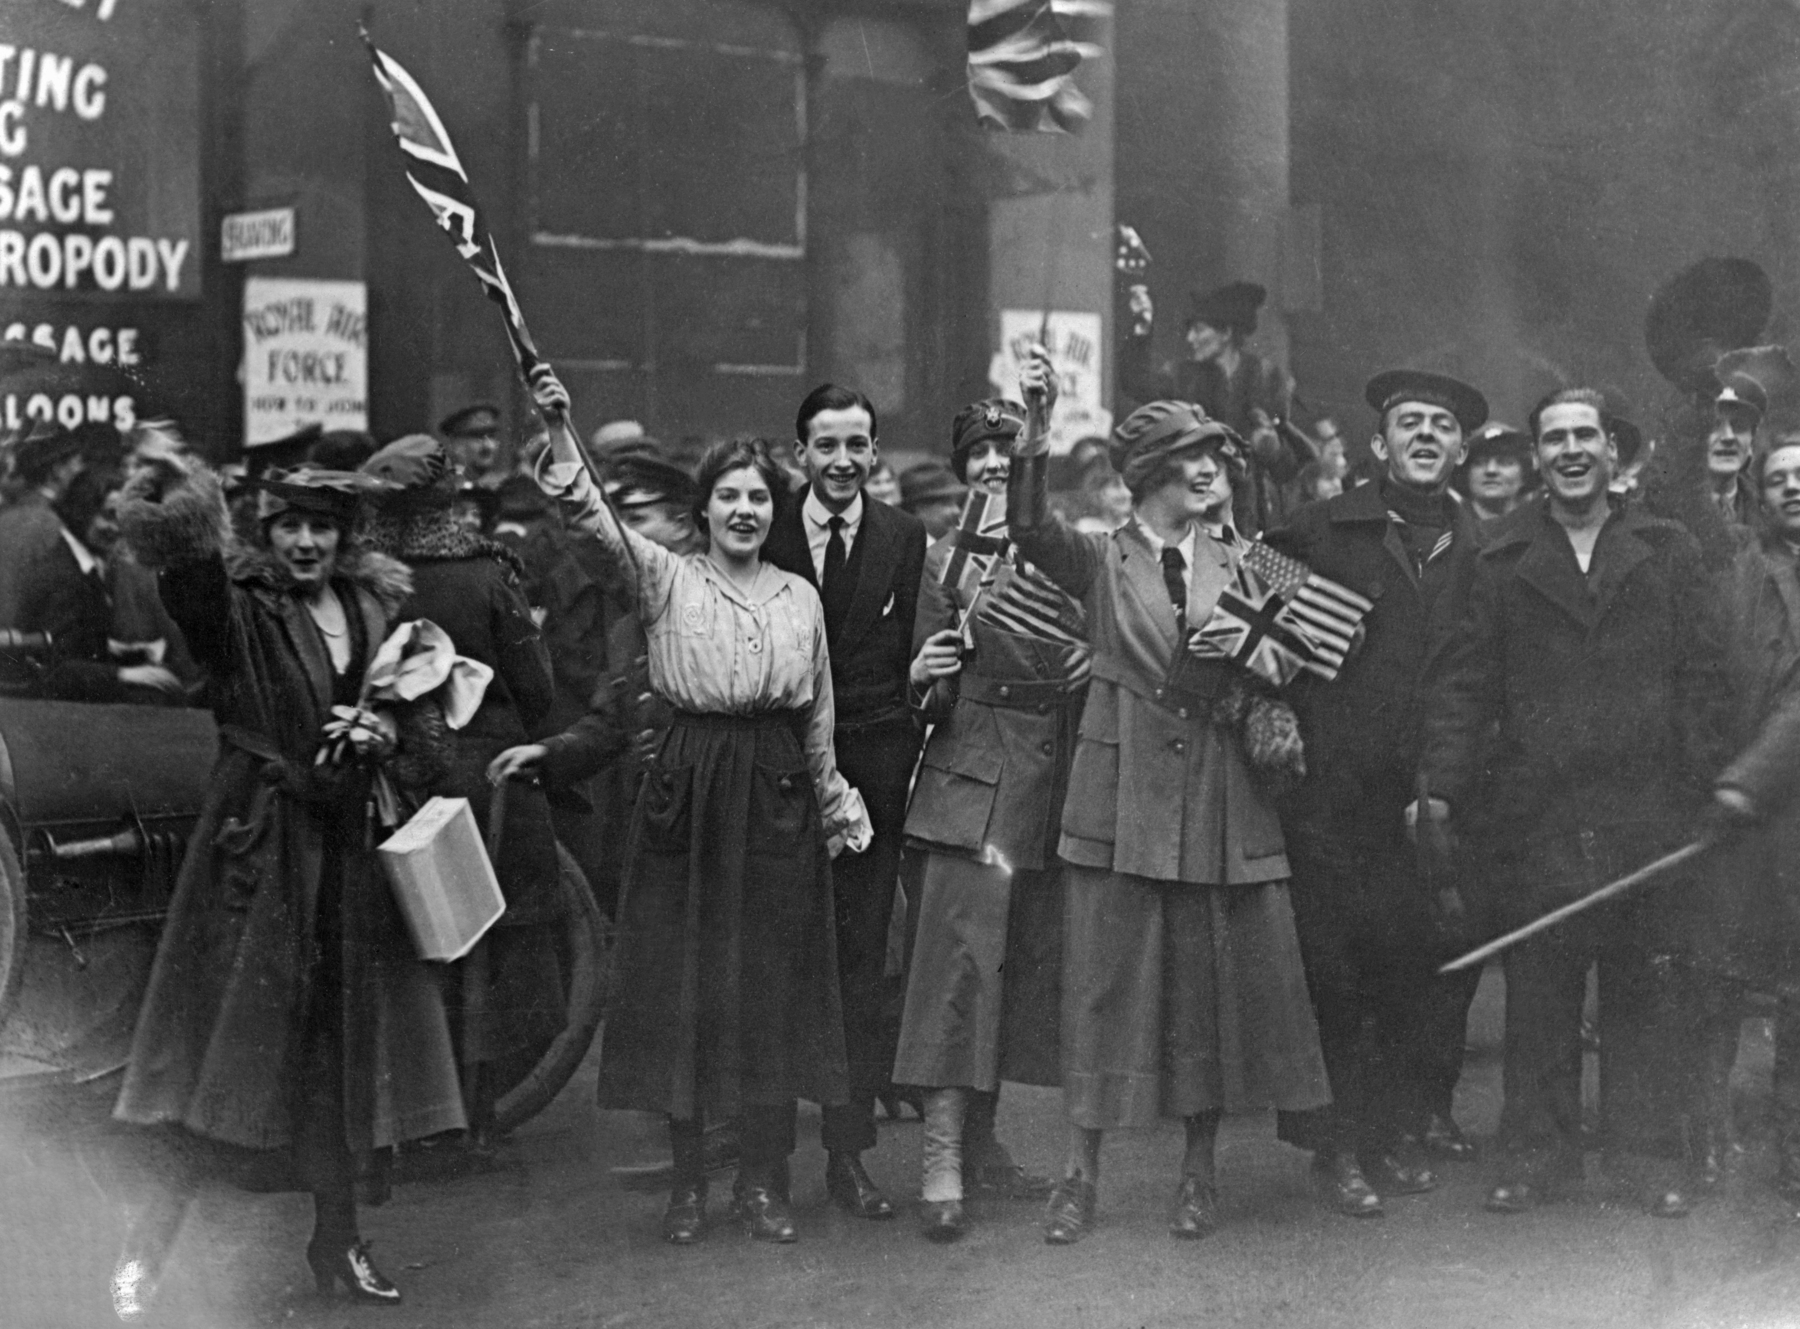 Fotografia em preto e branco. Uma multidão de homens e mulheres sorridentes, lado a lado, portando hastes com bandeiras do Reino Unido.